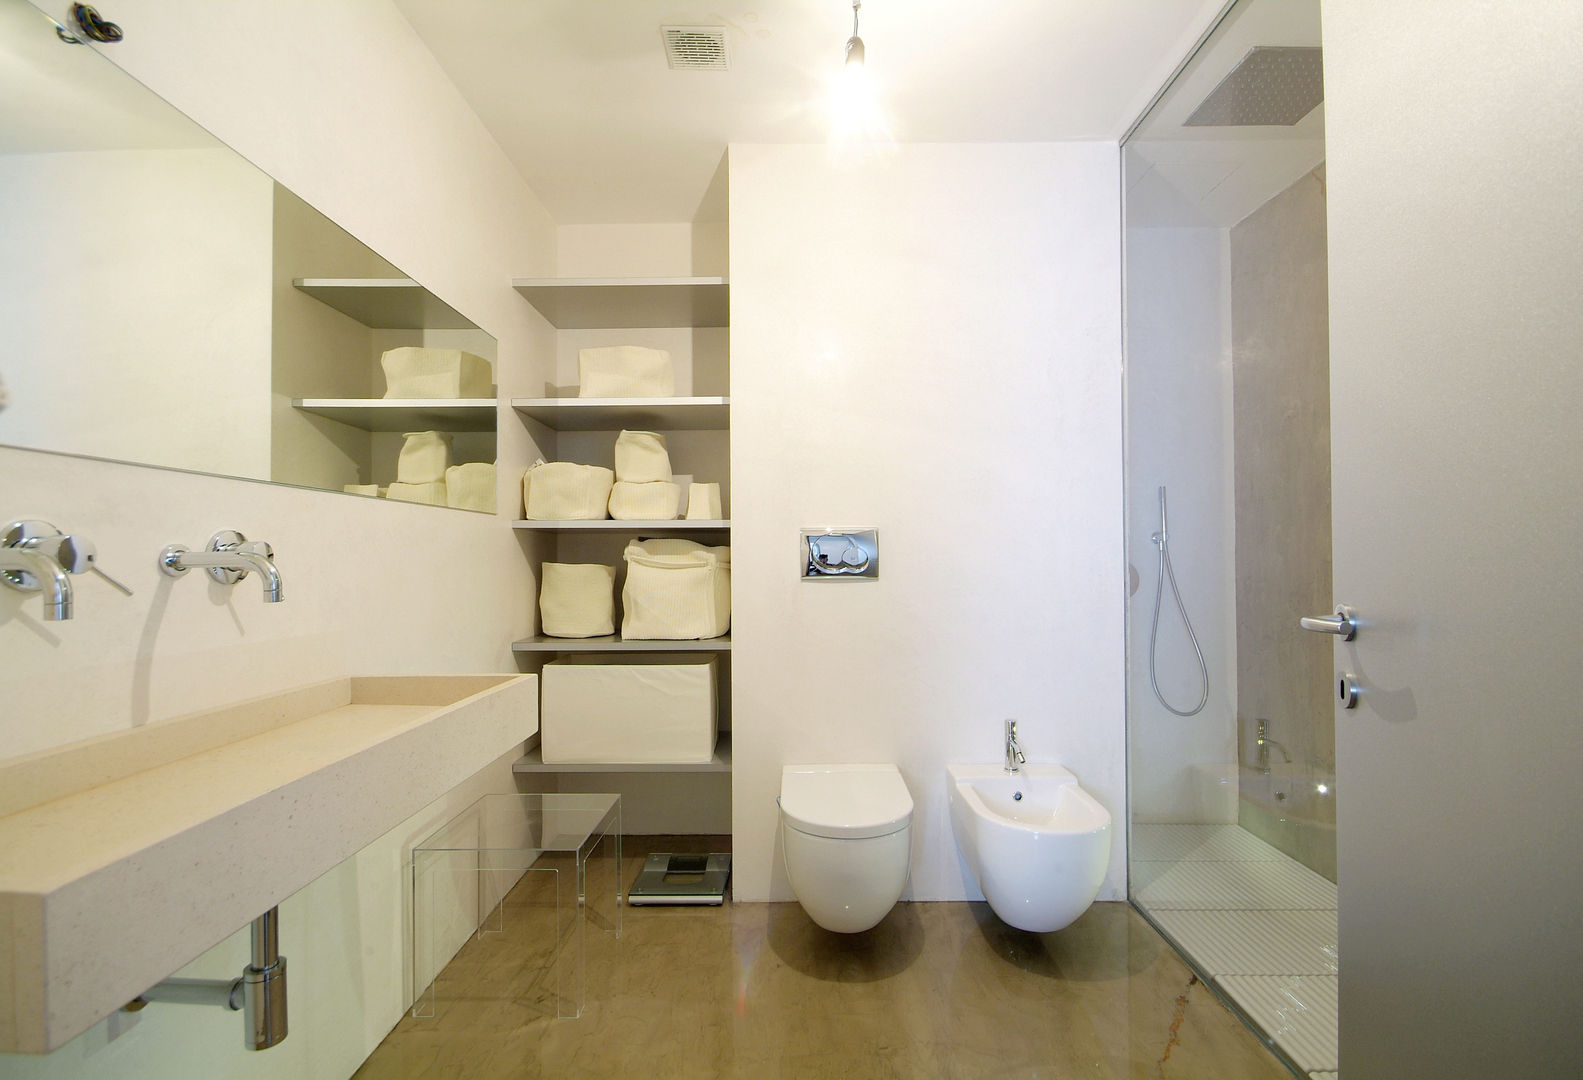 Un sogno chiamato casa, LF&Partners LF&Partners Phòng tắm phong cách tối giản